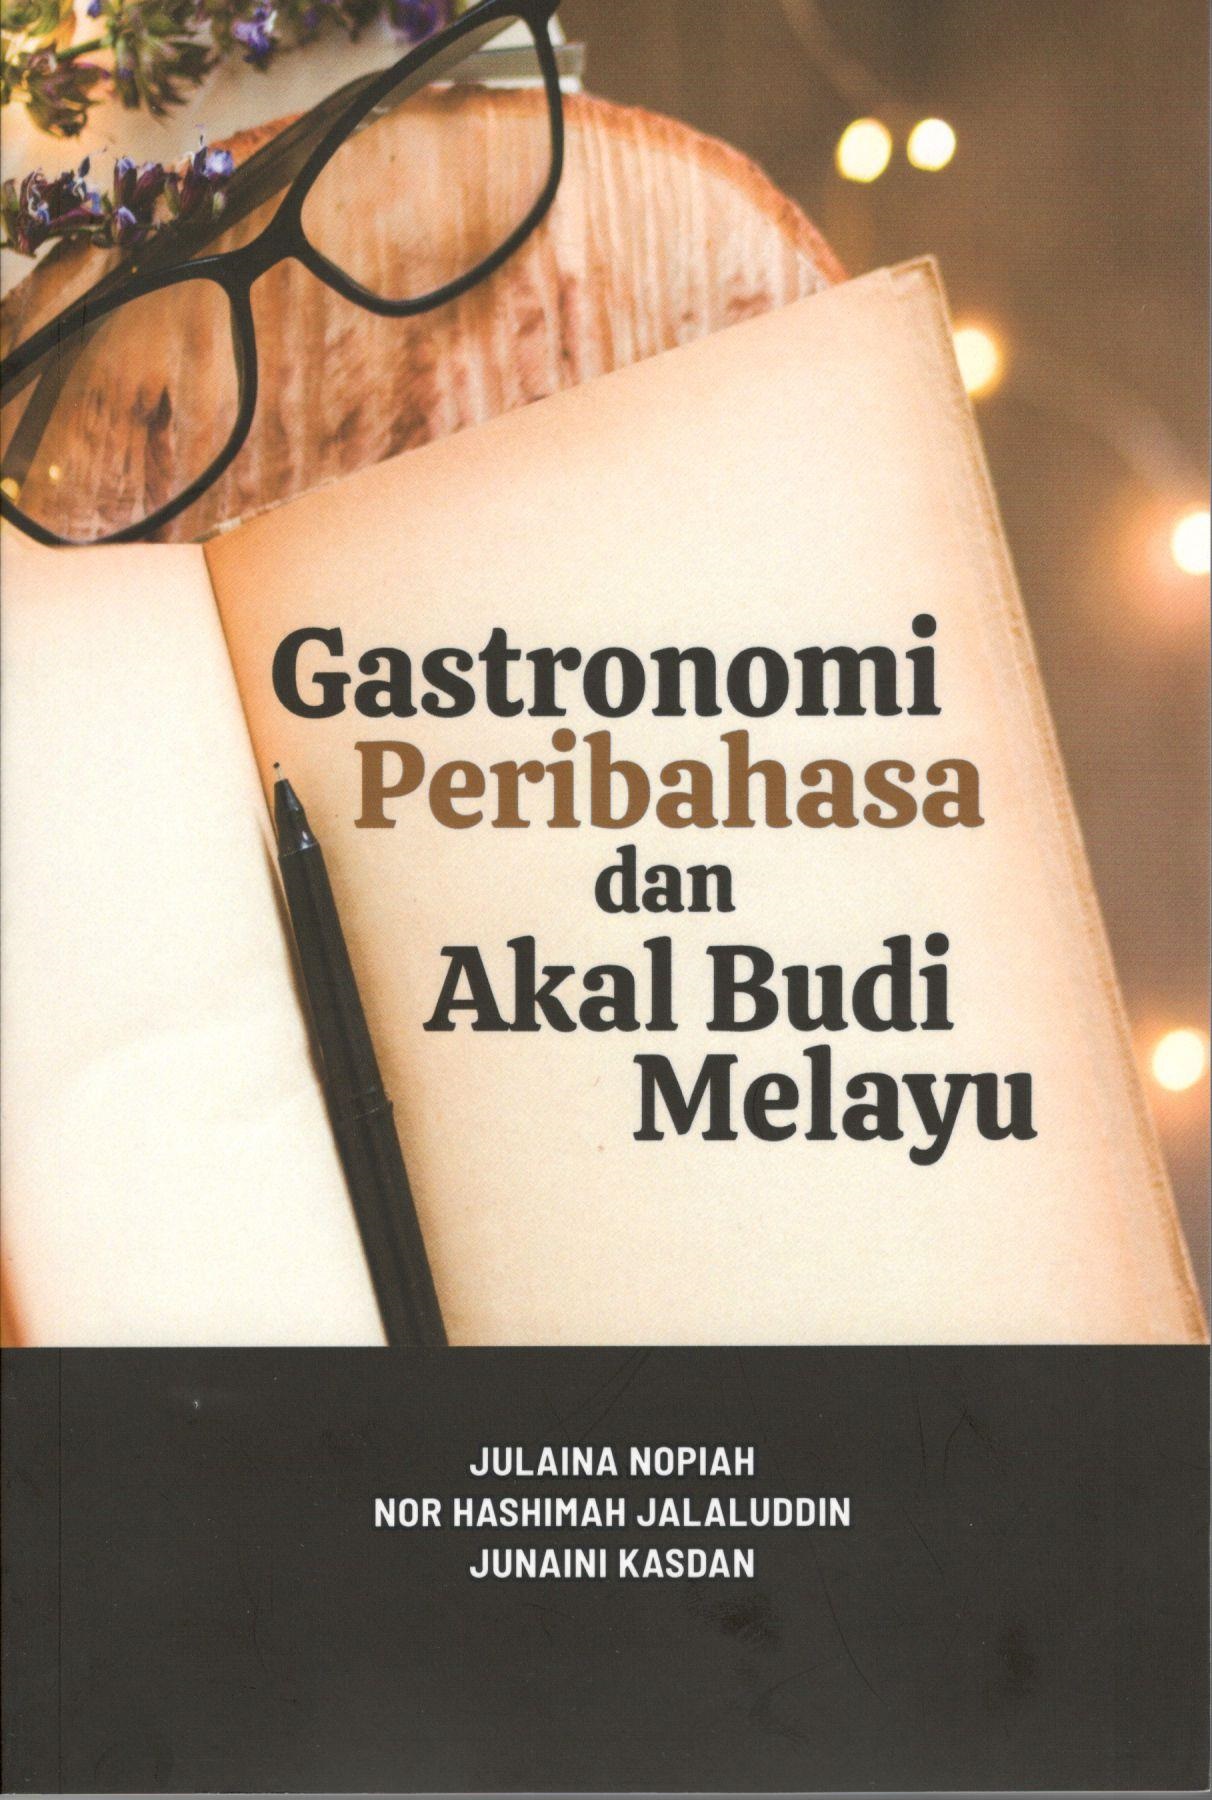 Gastronomi, Peribahasa dan Akal Budi Melayu